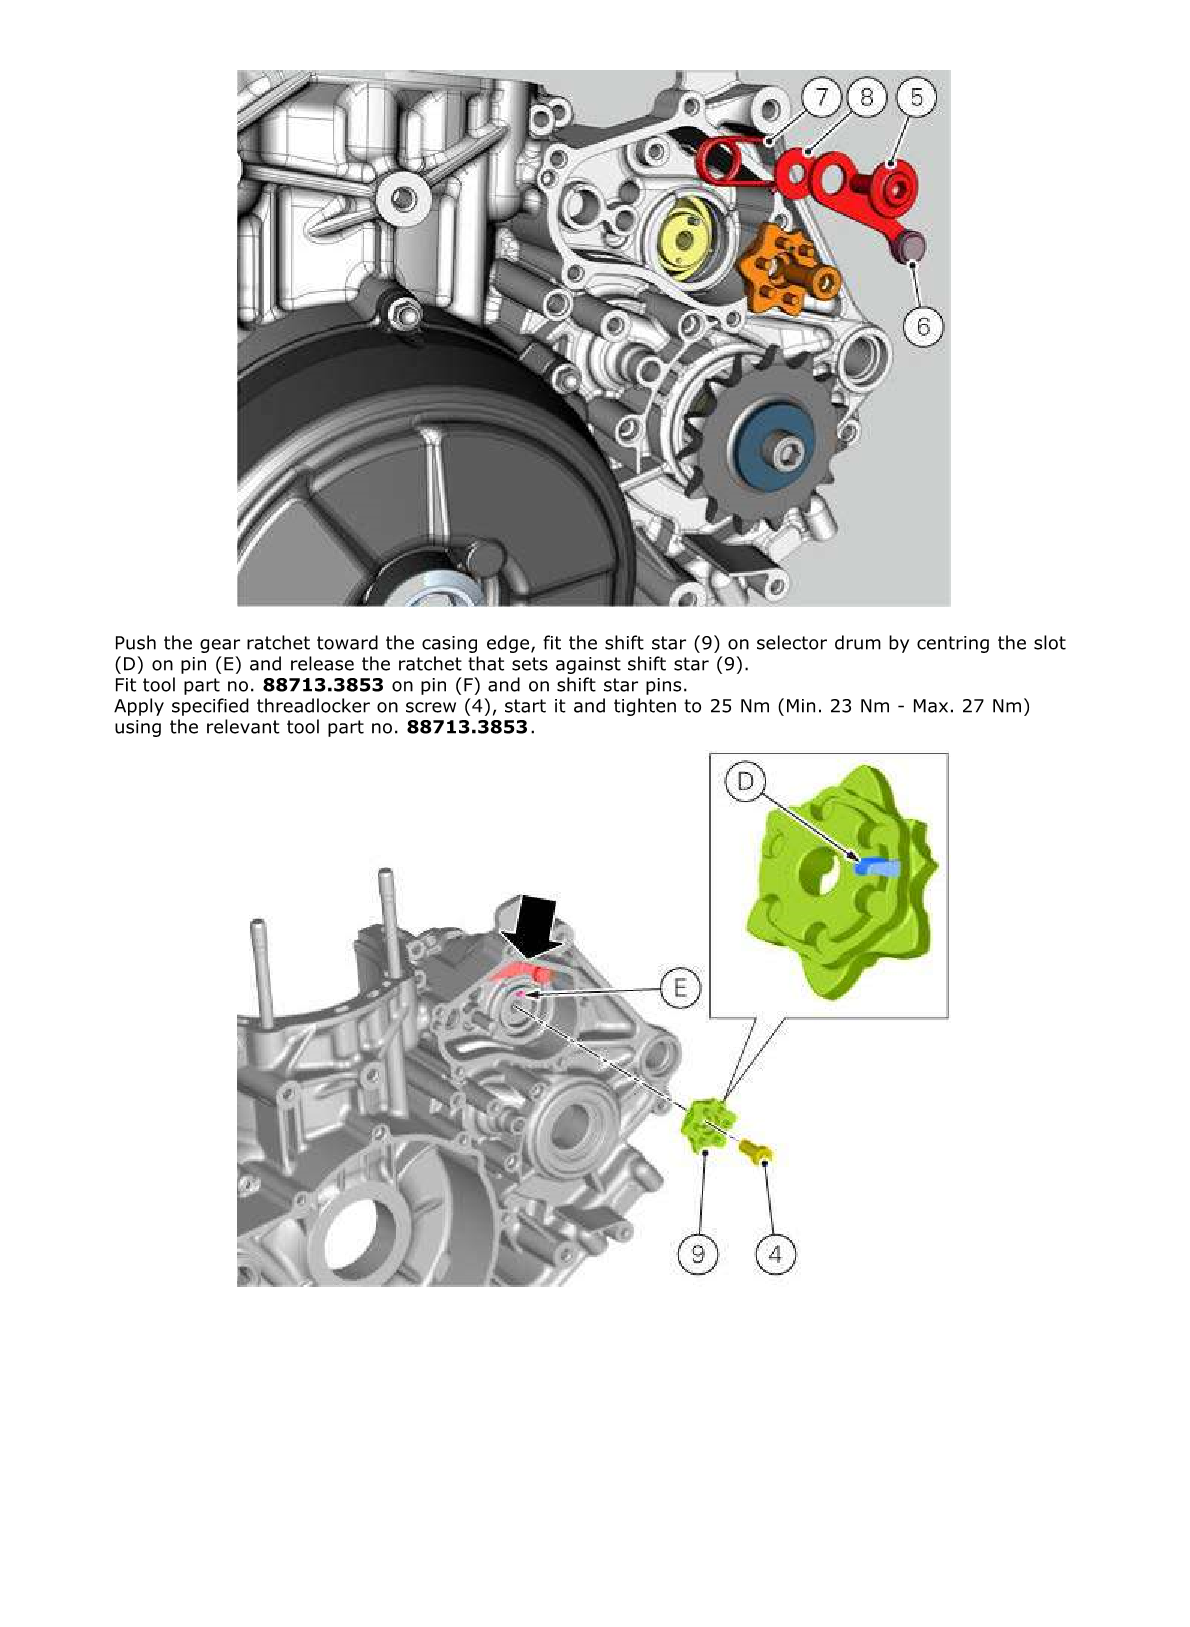 2012-2014 Ducati Panigale S Tricolore 1199 Twin Manual